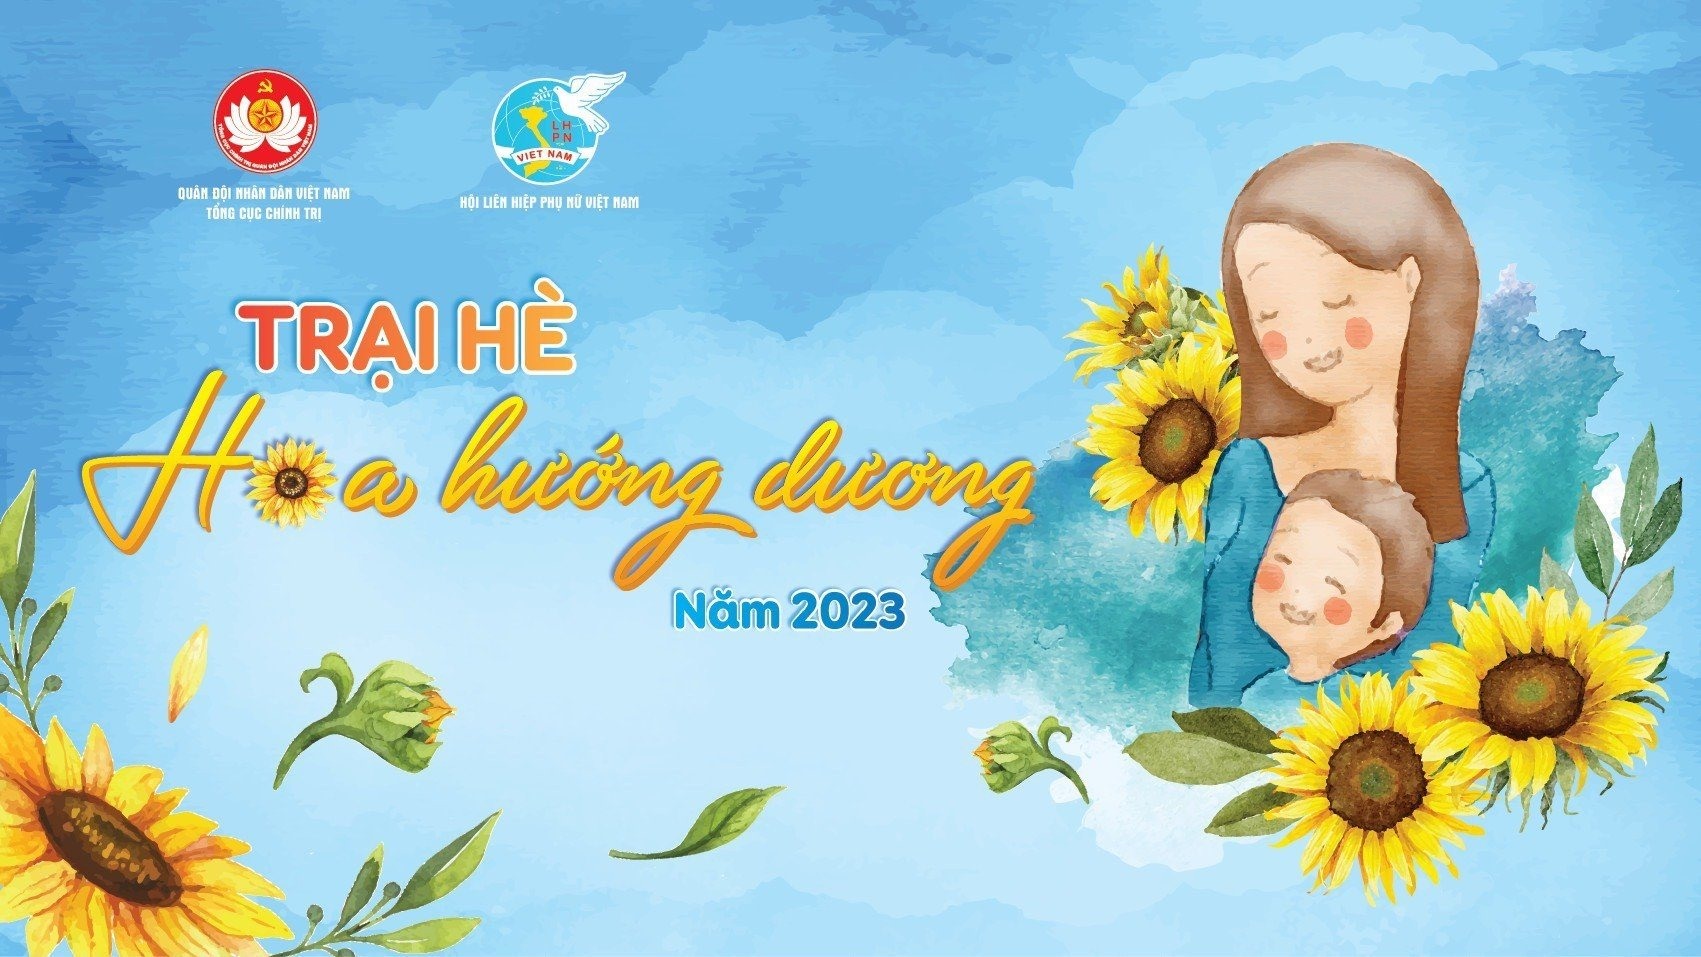 Trại hè Hoa hướng dương là nơi giúp trẻ mồ côi tìm được mẹ đỡ đầu. Ảnh: Hội Liên hiệp phụ nữ Việt Nam.